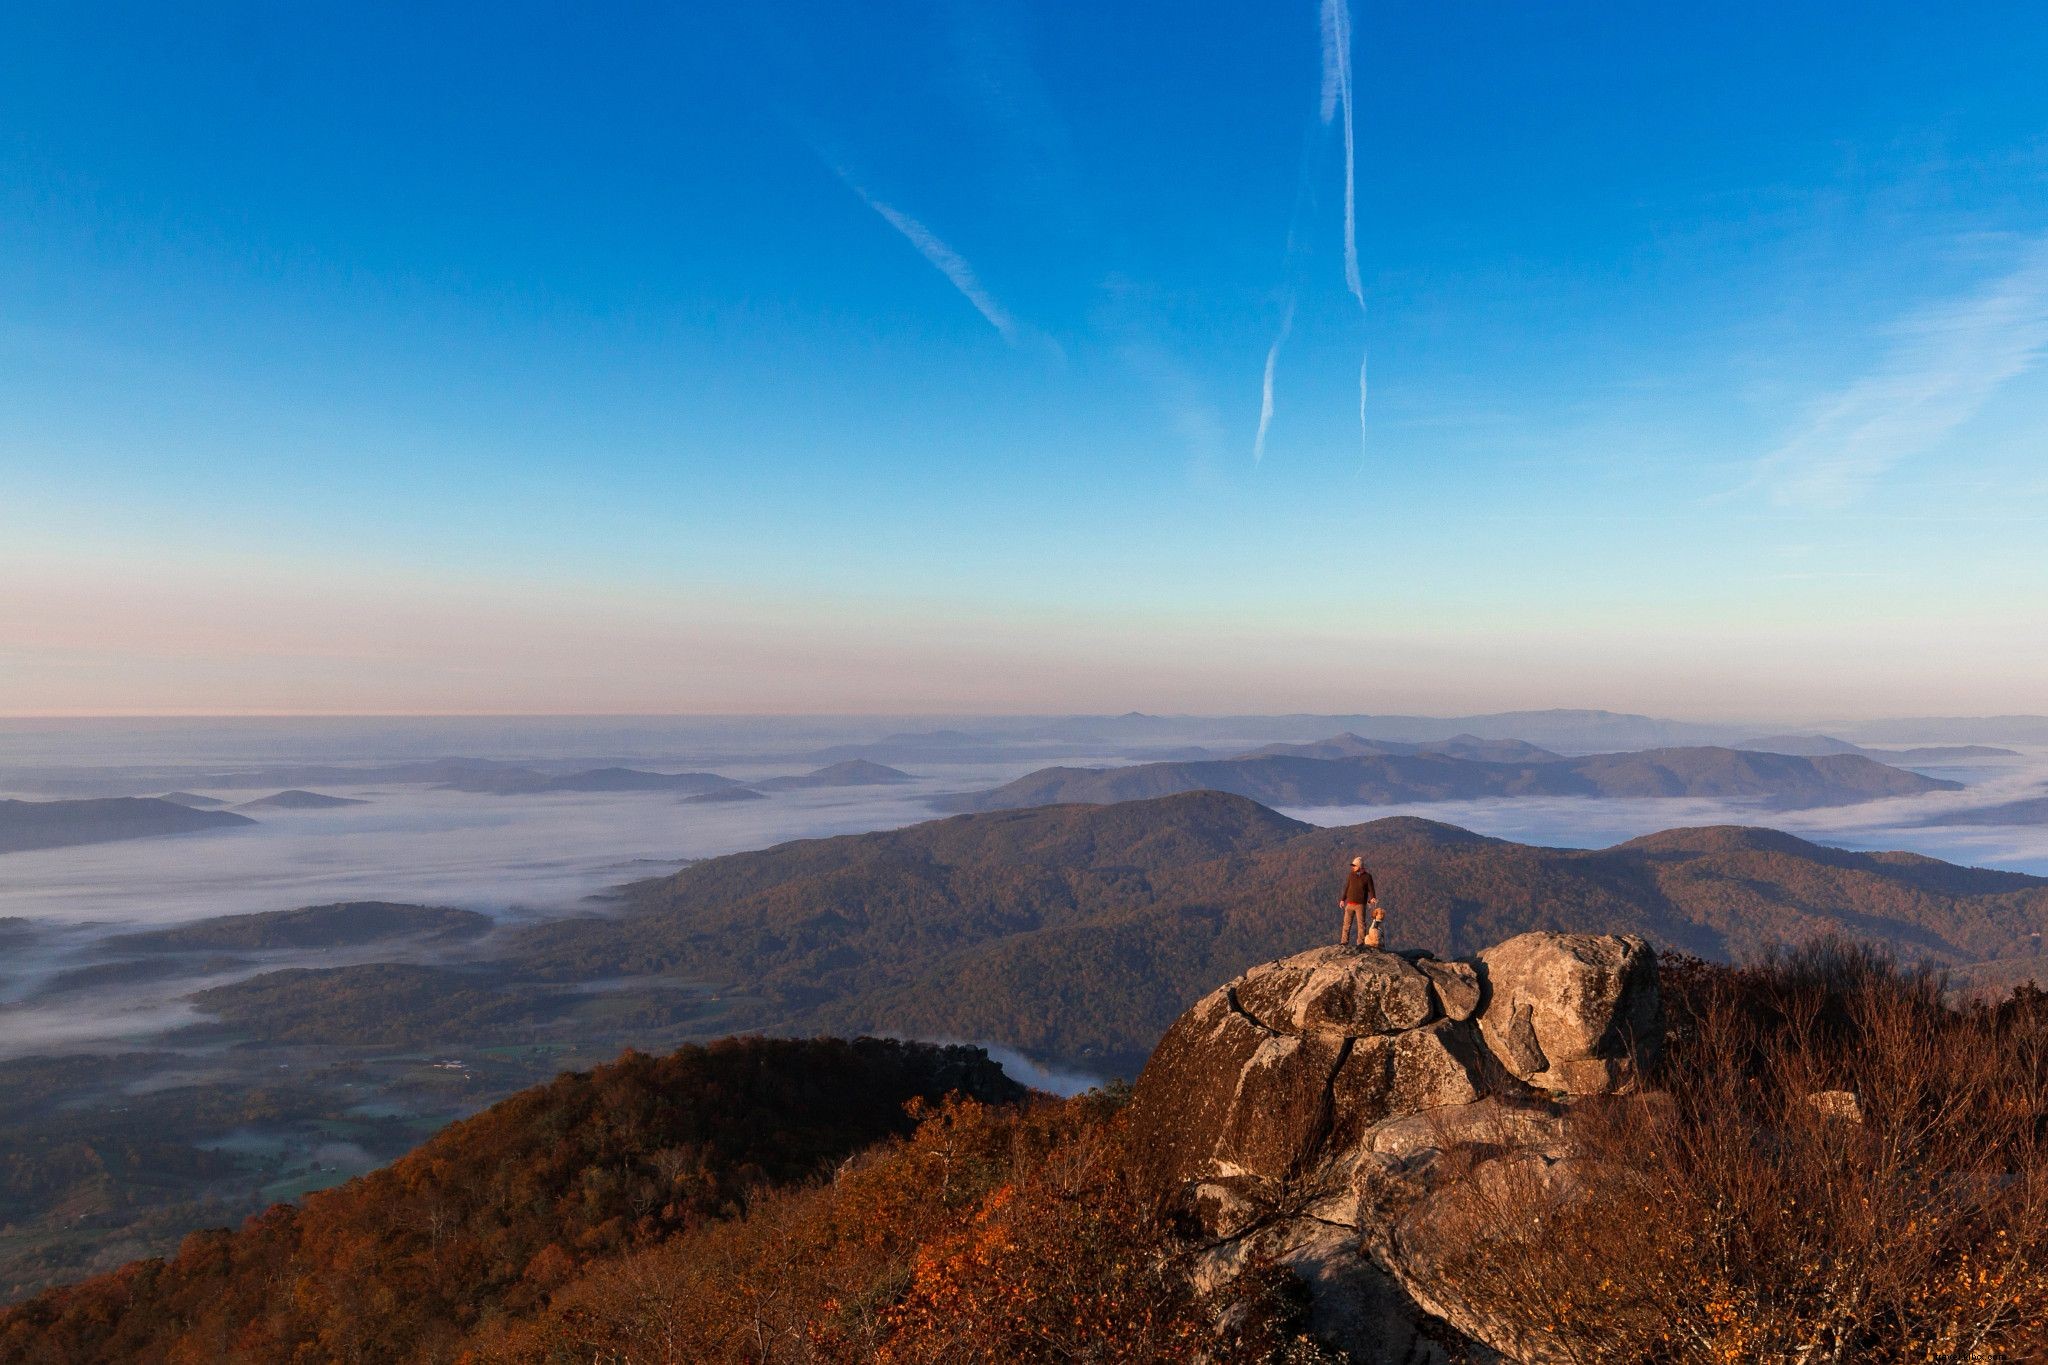 10 endroits spectaculaires pour voir le feuillage d automne en Virginie qui ne sont pas le parc national de Shenandoah 